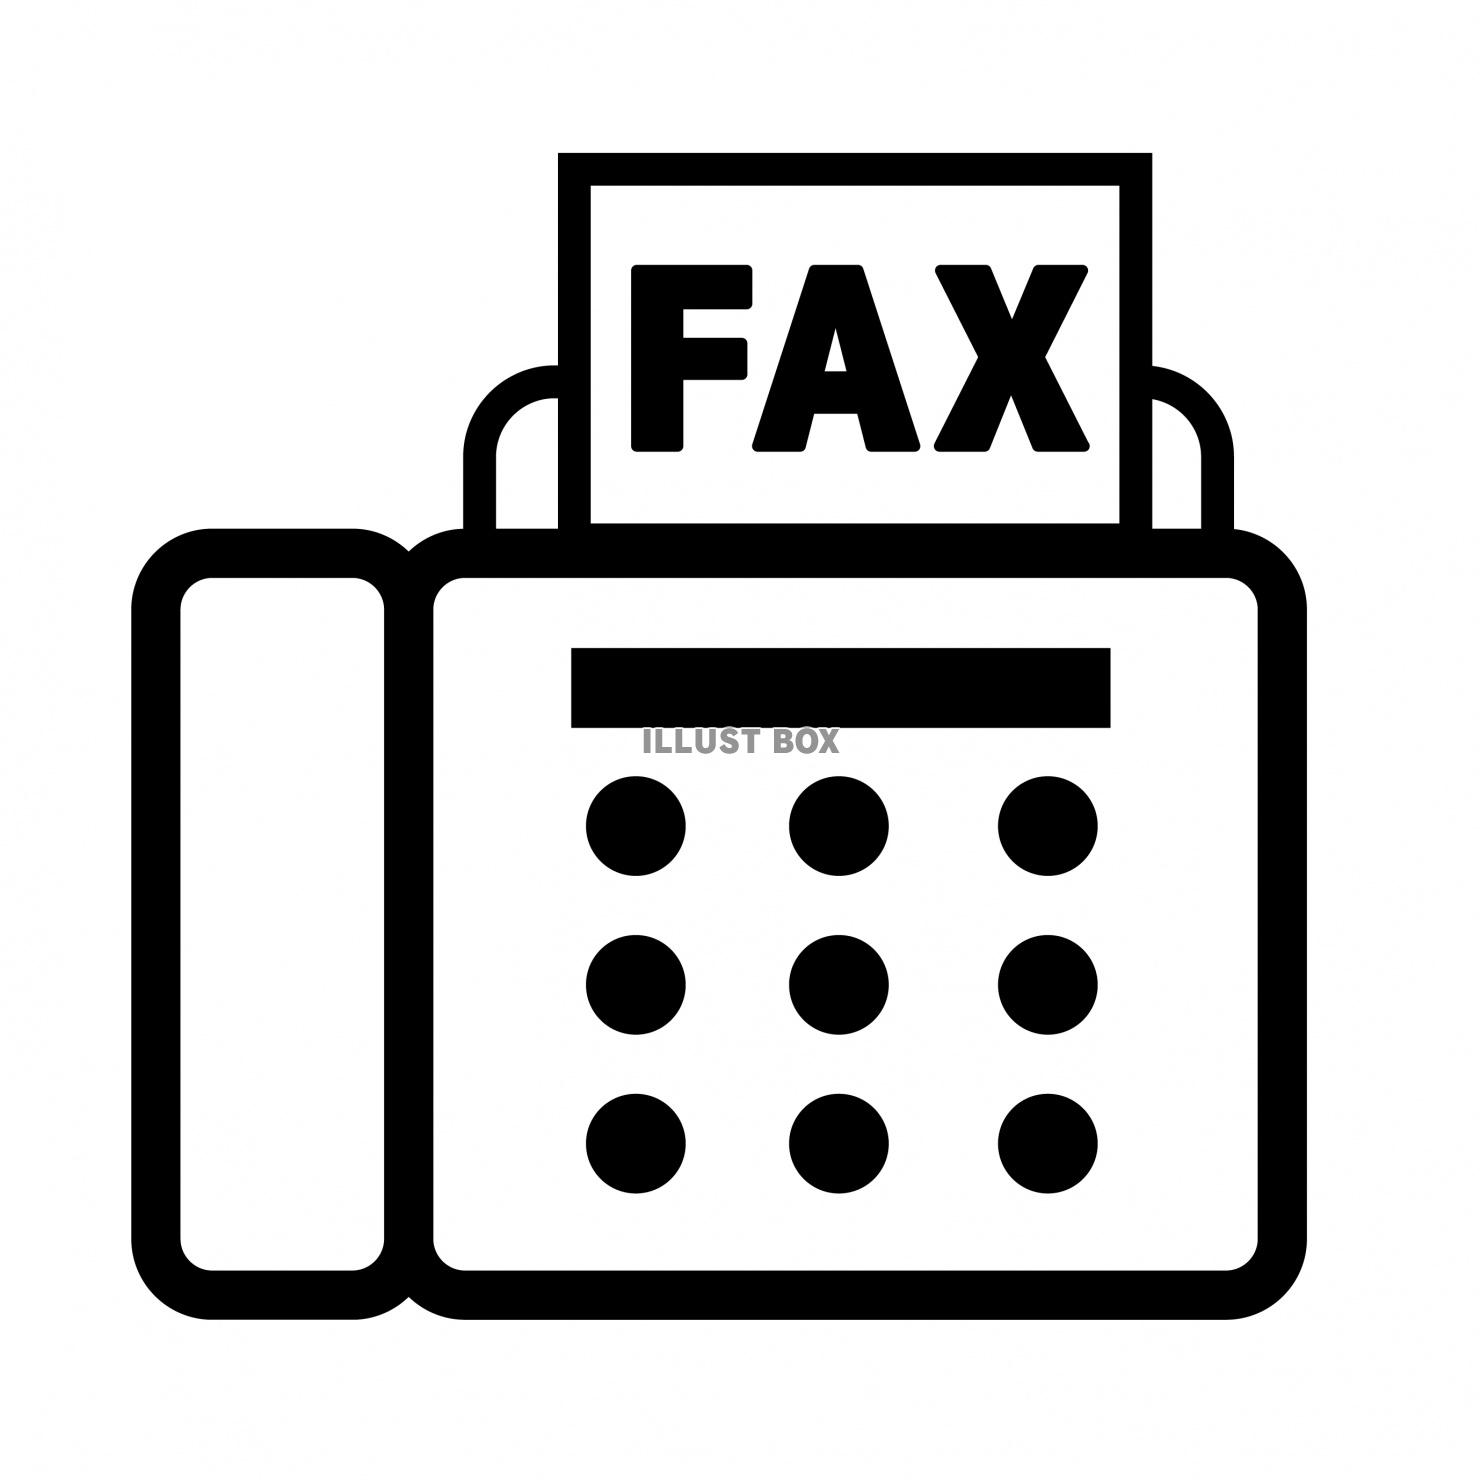 Fax イラスト無料